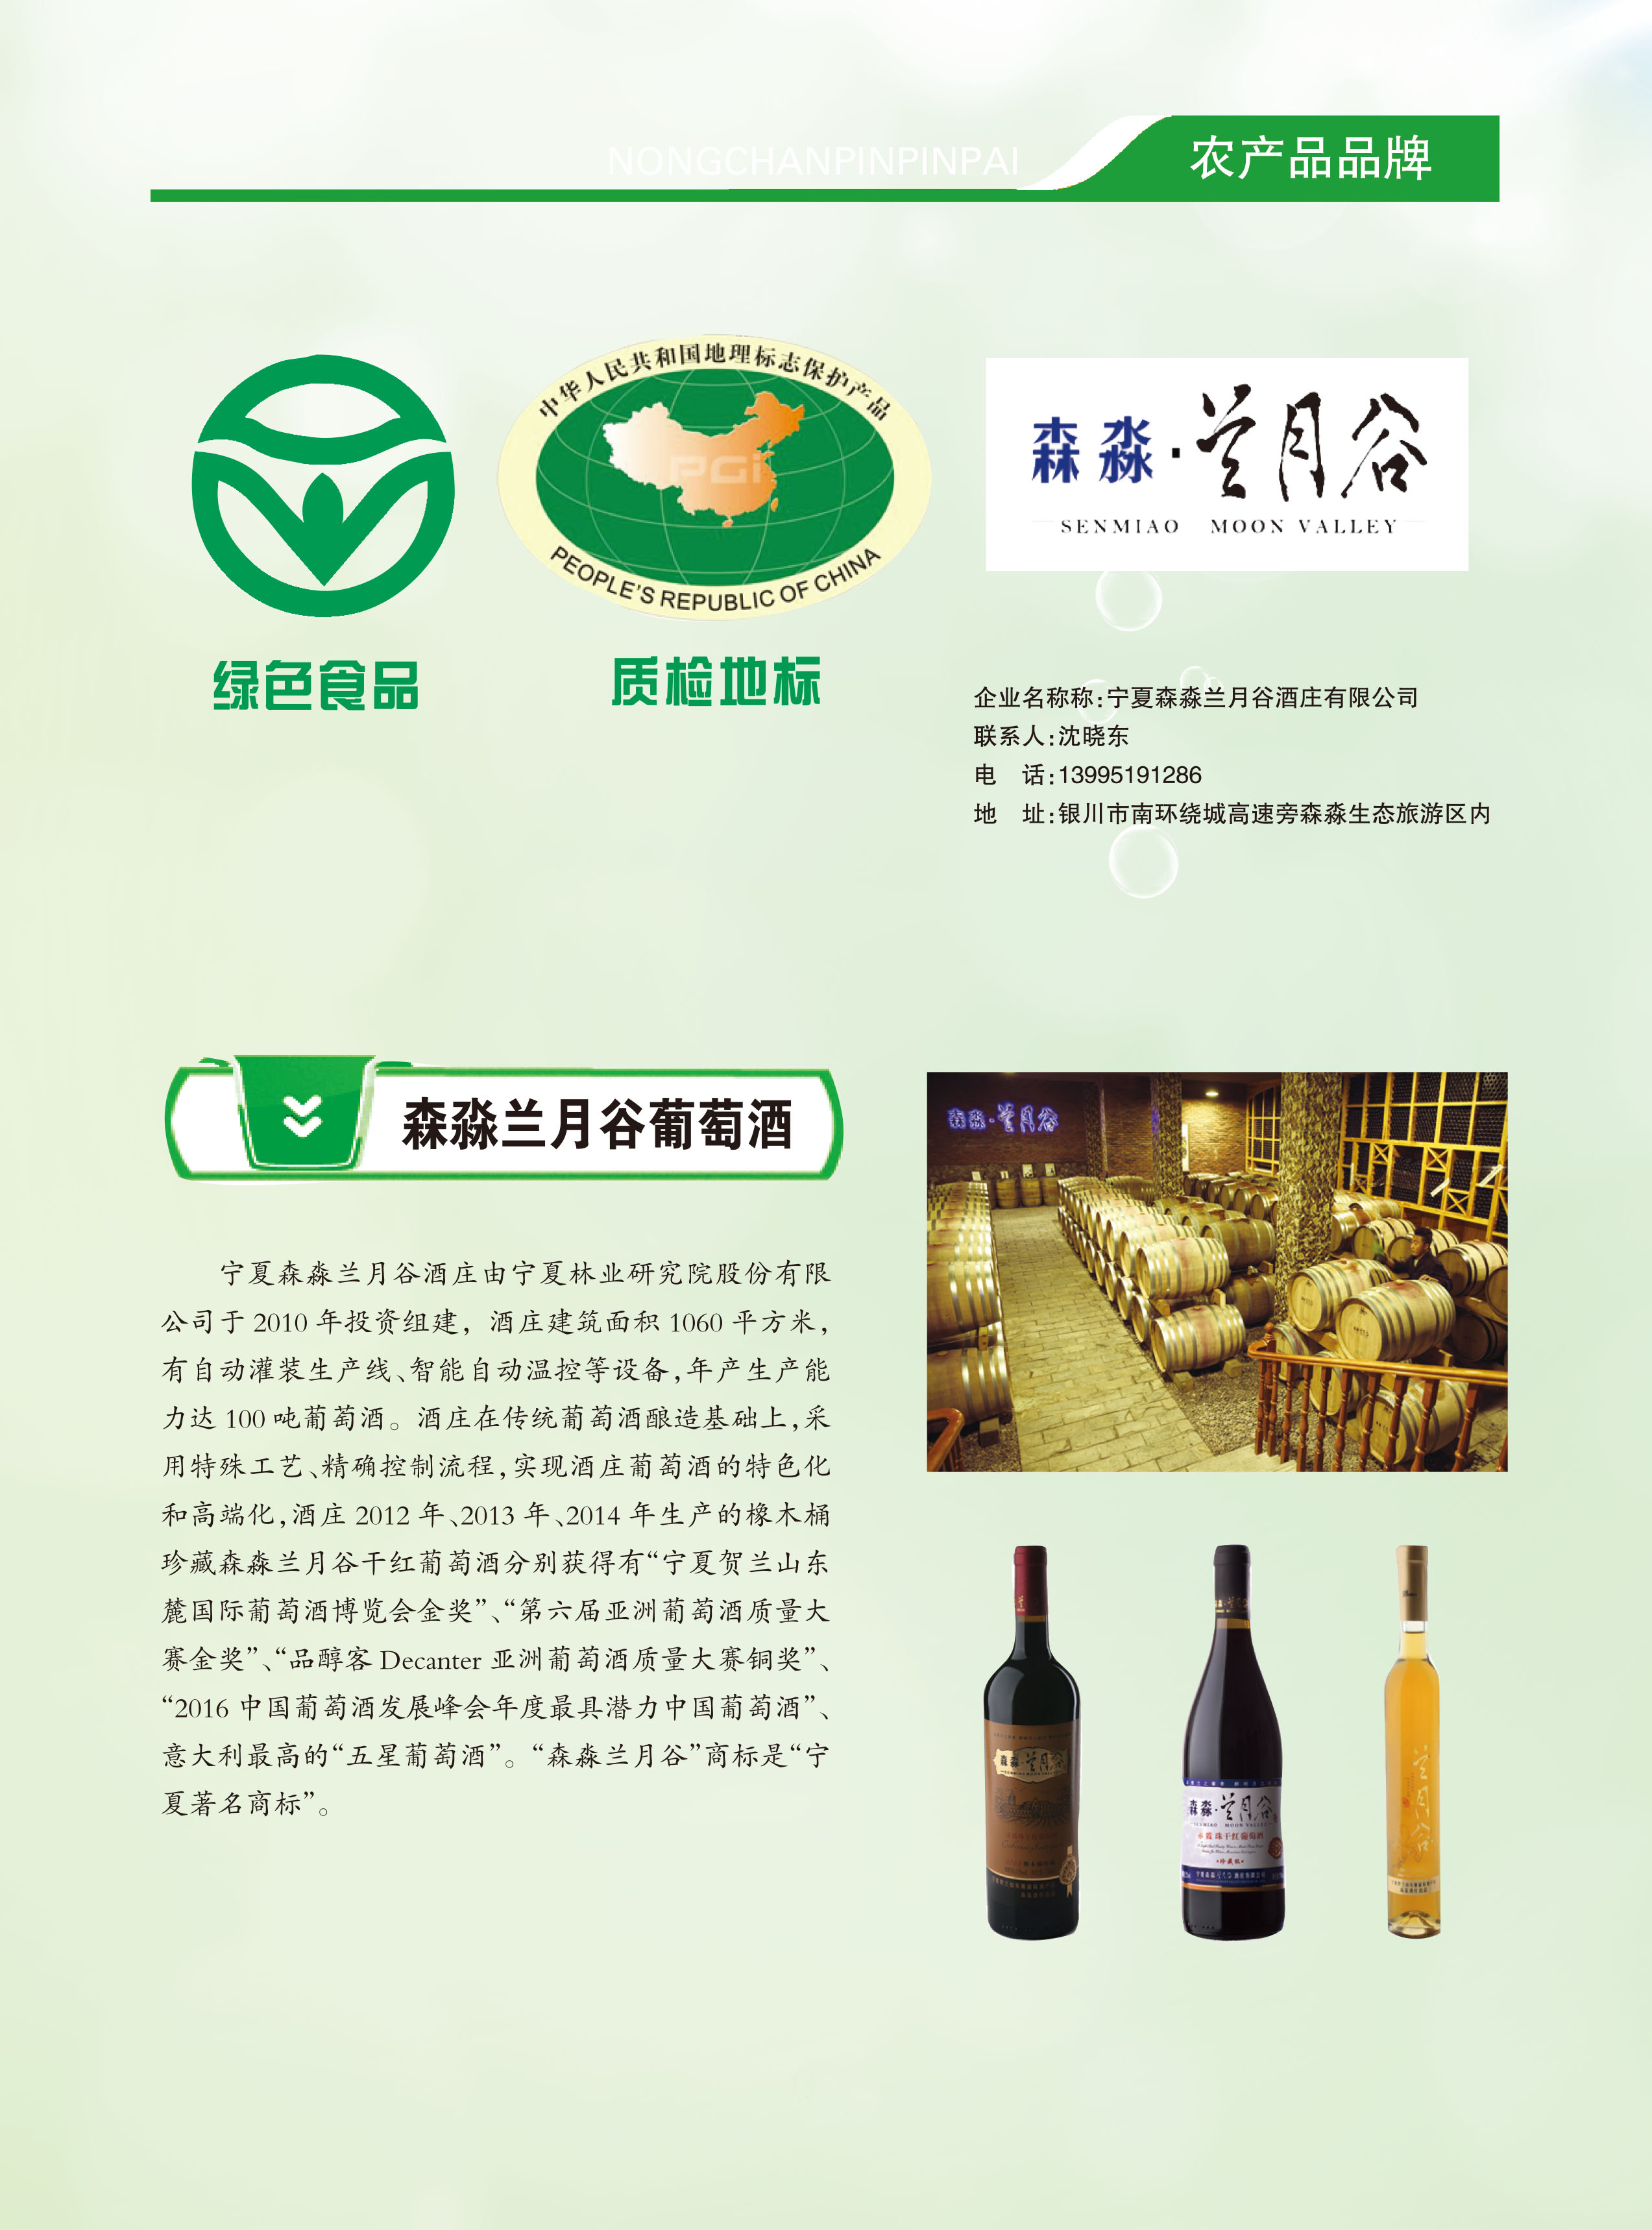 首届宁夏优质特色农产品品牌—森淼兰月谷葡萄酒